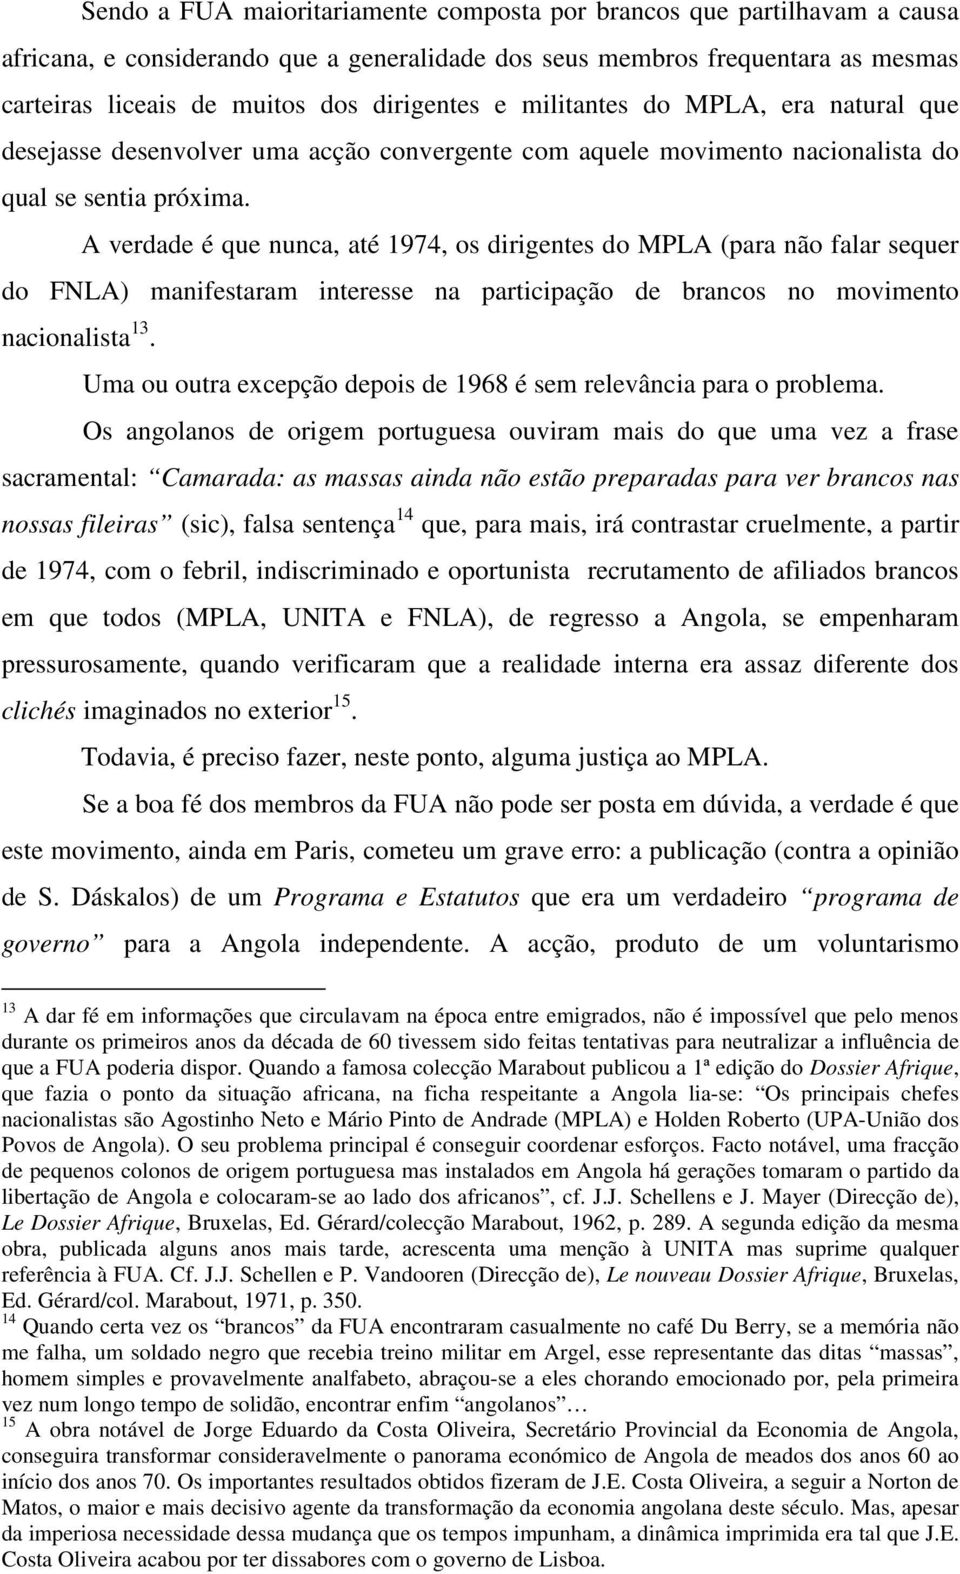 A verdade é que nunca, até 1974, os dirigentes do MPLA (para não falar sequer do FNLA) manifestaram interesse na participação de brancos no movimento nacionalista 13.